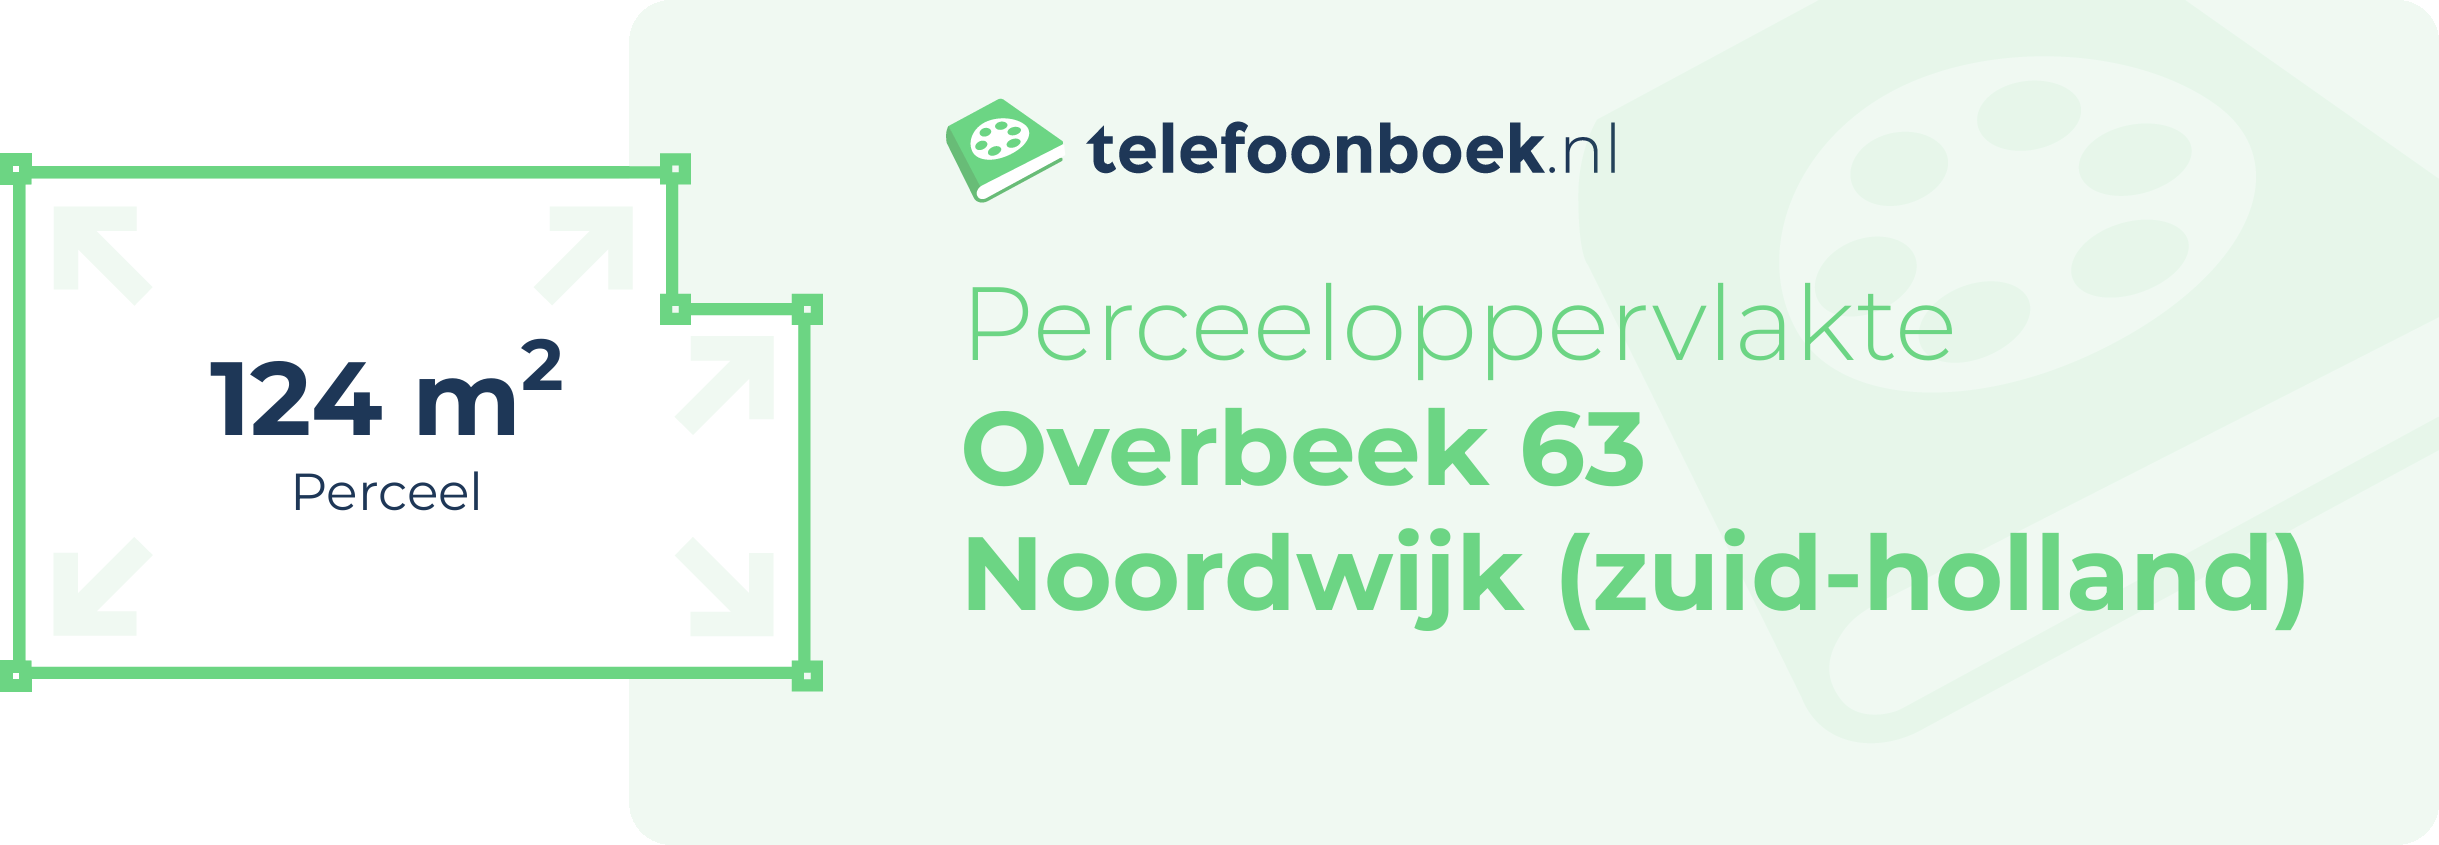 Perceeloppervlakte Overbeek 63 Noordwijk (Zuid-Holland)